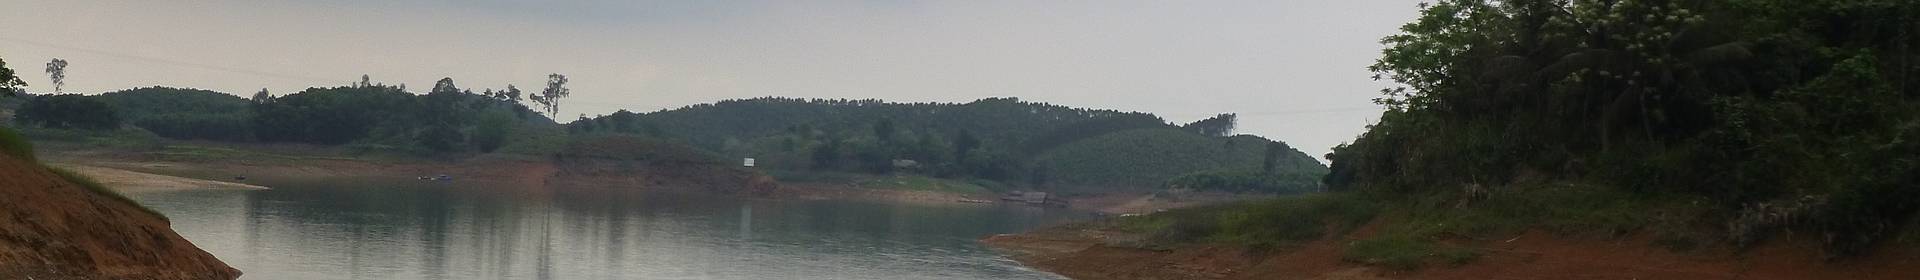 Hồ Thác Bà